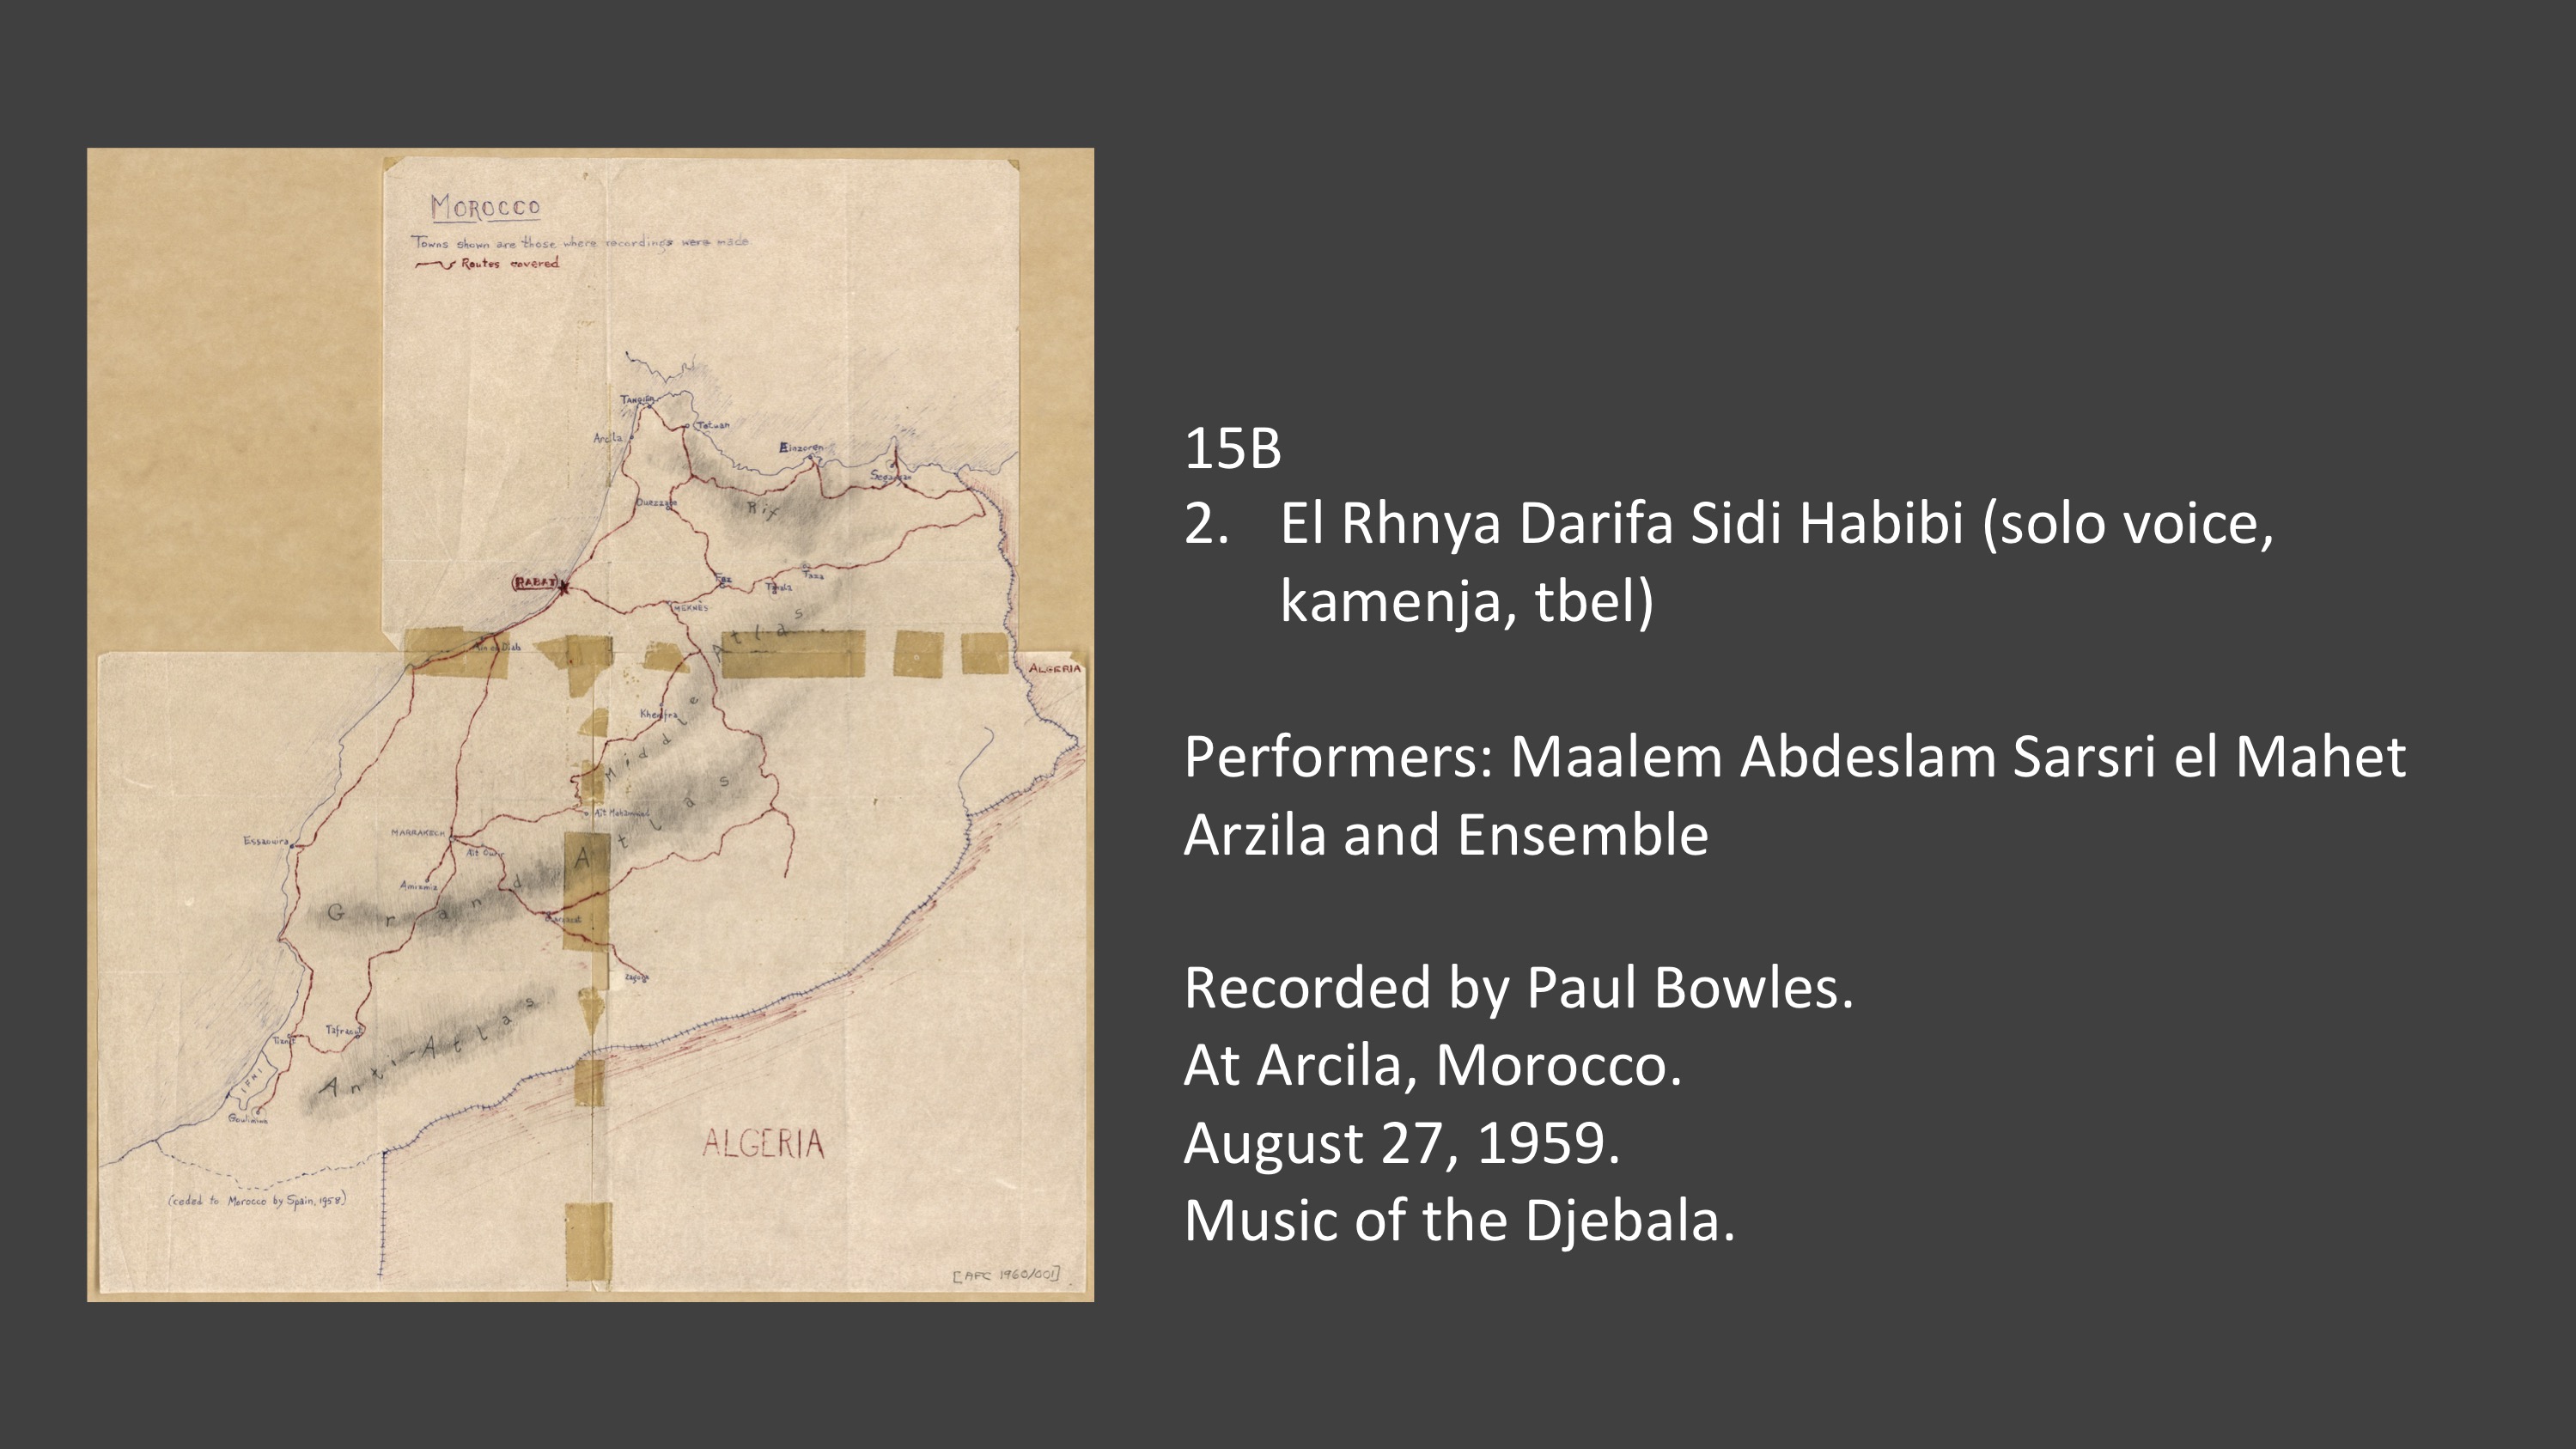 15B 2. El Rhnya Darifa Sidi Habibi (solo voice, kamenja, tbel)

Performers: Maalem Abdeslam Sarsri el Mahet Arzila and Ensemble
Recorded by Paul Bowles.
At Arcila, Morocco.
August 27, 1959.
Music of the Djebala.
